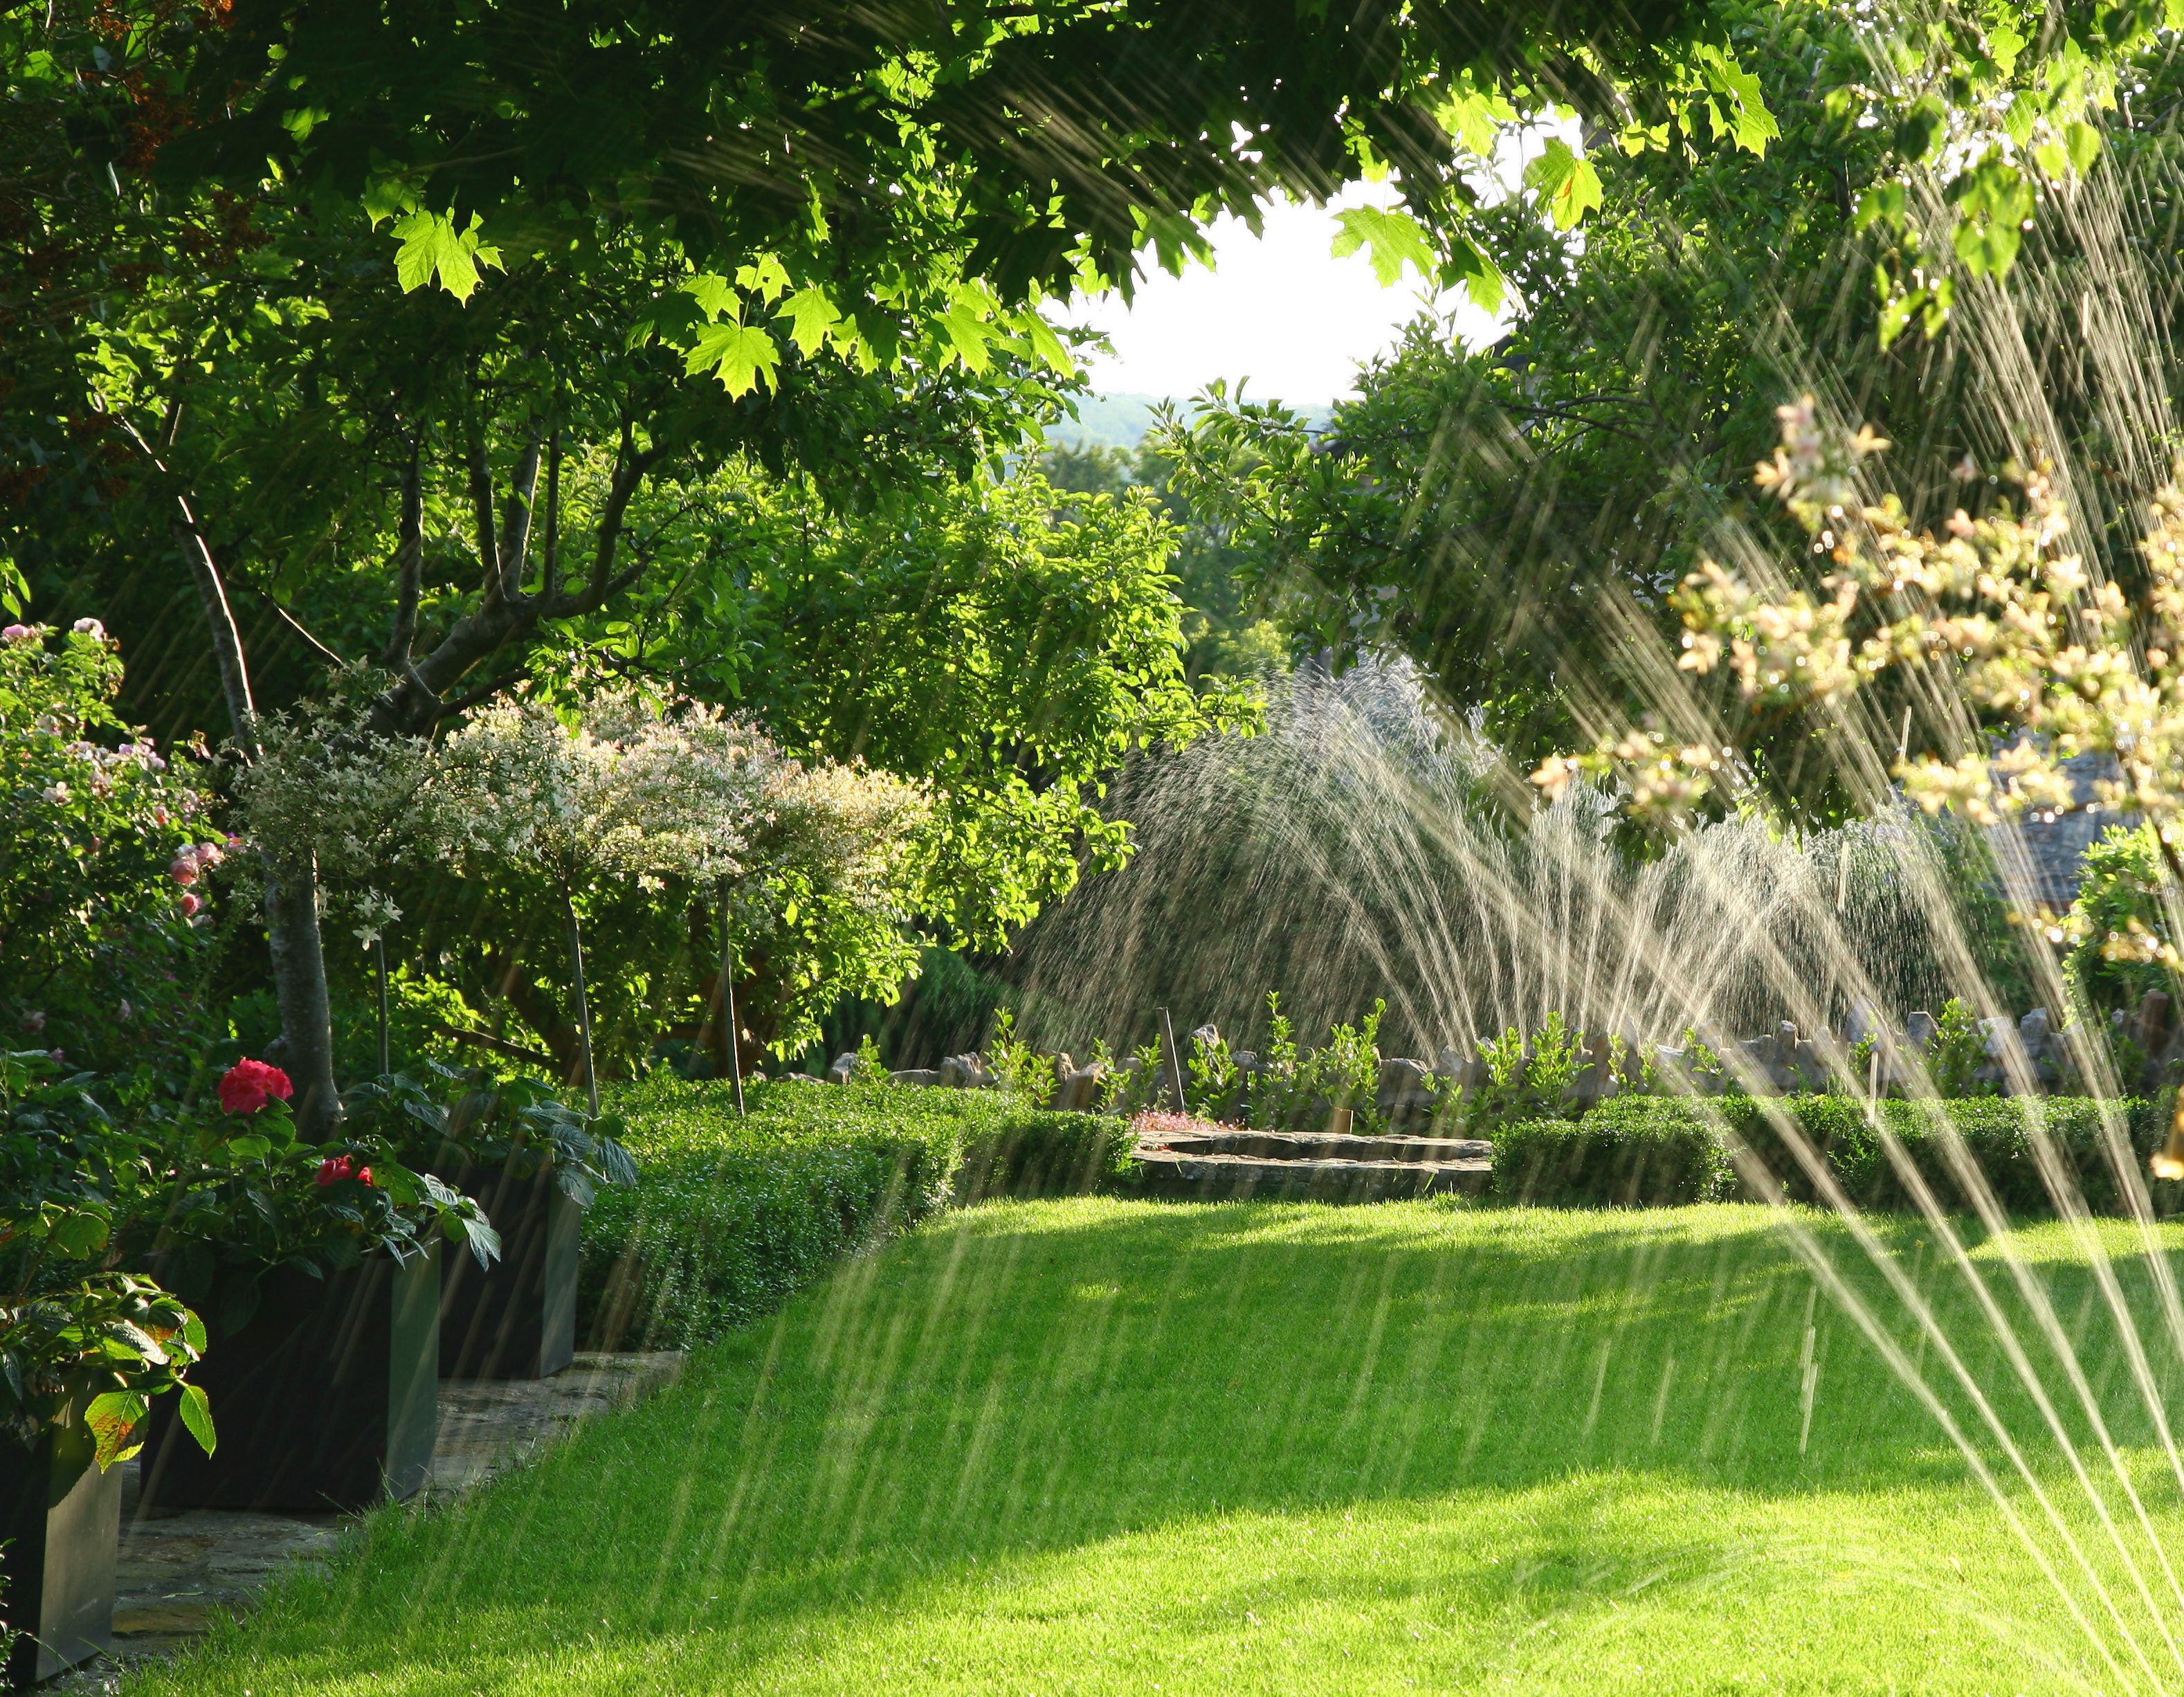 sprinkler watering a lawn